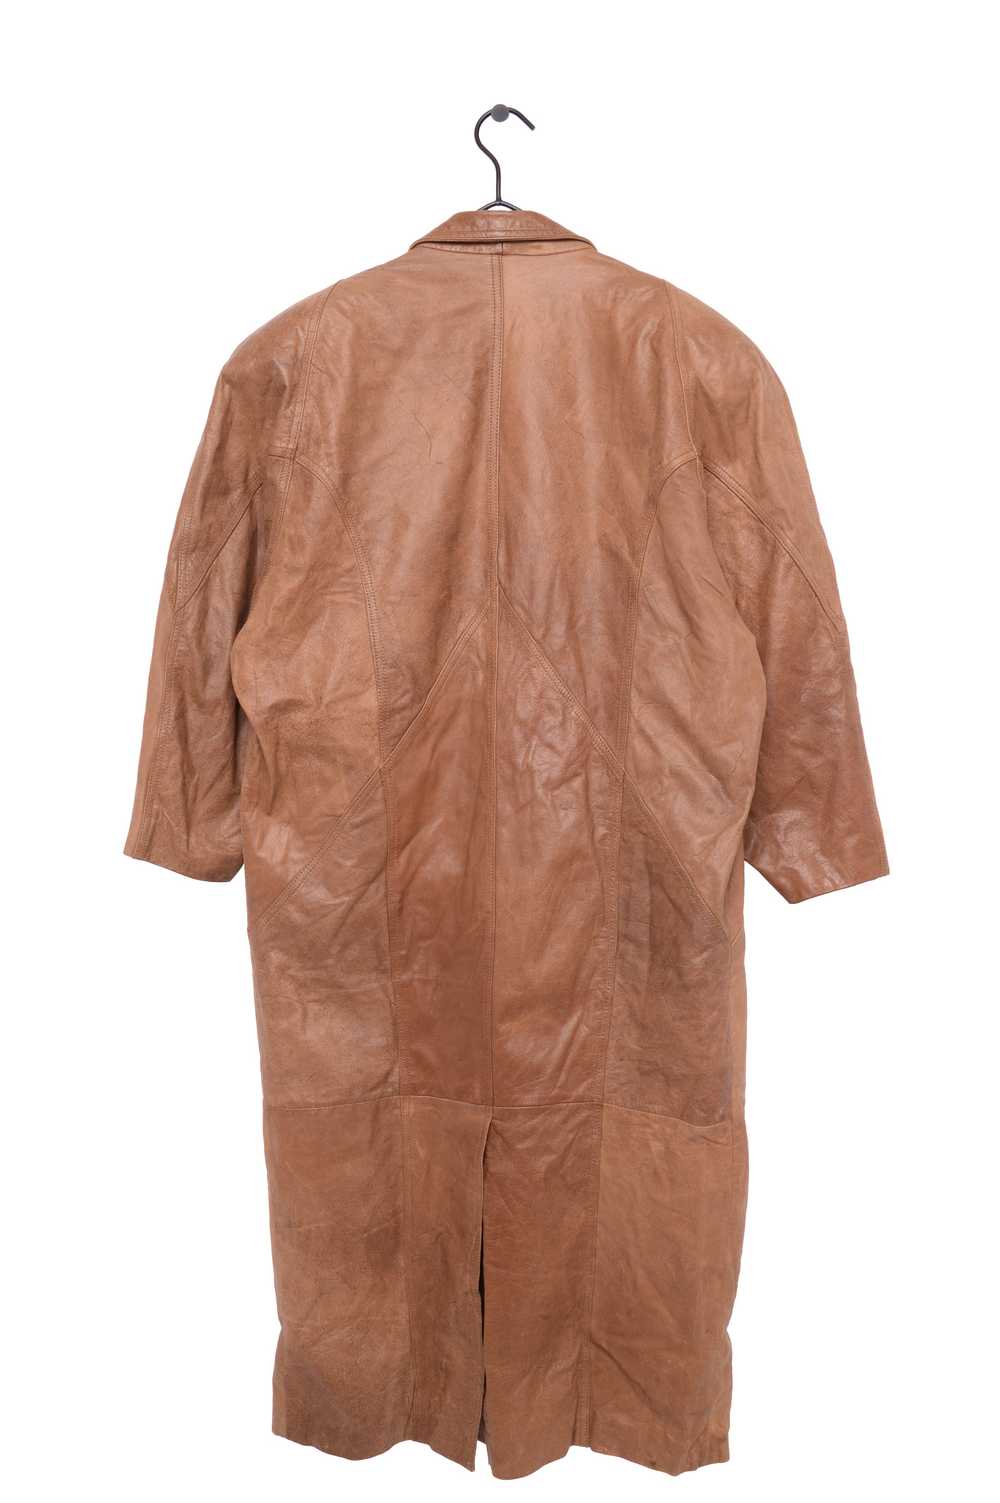 Camel Long Leather Jacket - image 3